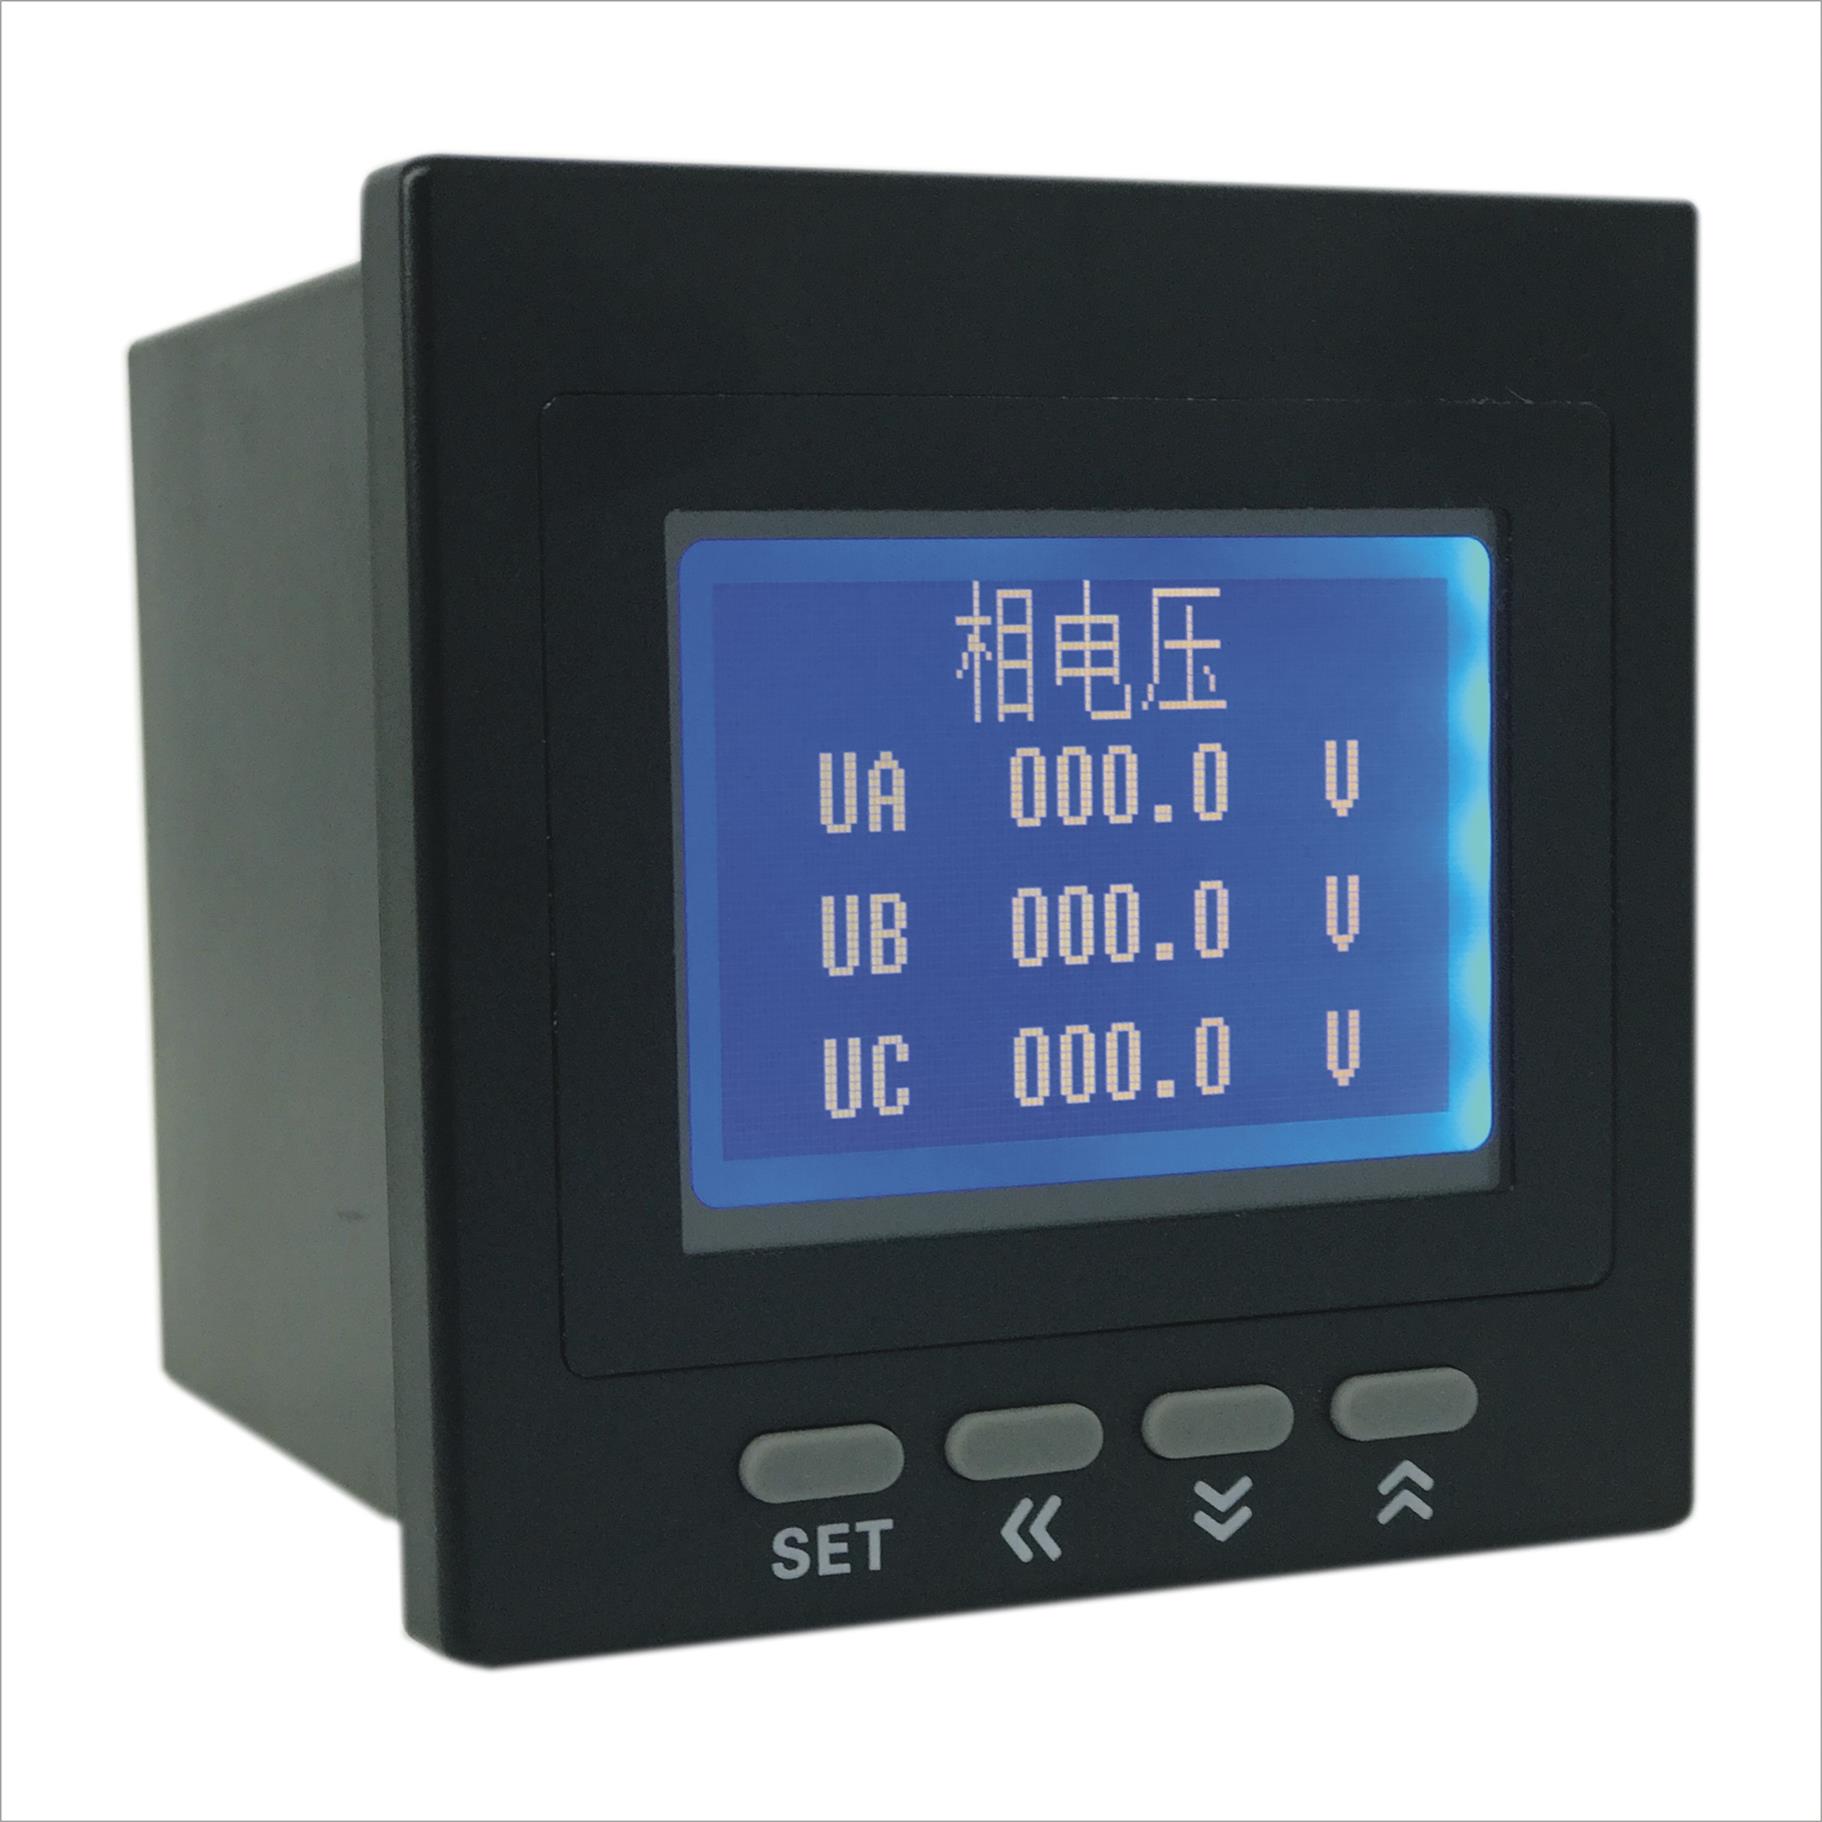 中文液晶多功能电力仪表经销商 技术成员之一 测量精度高